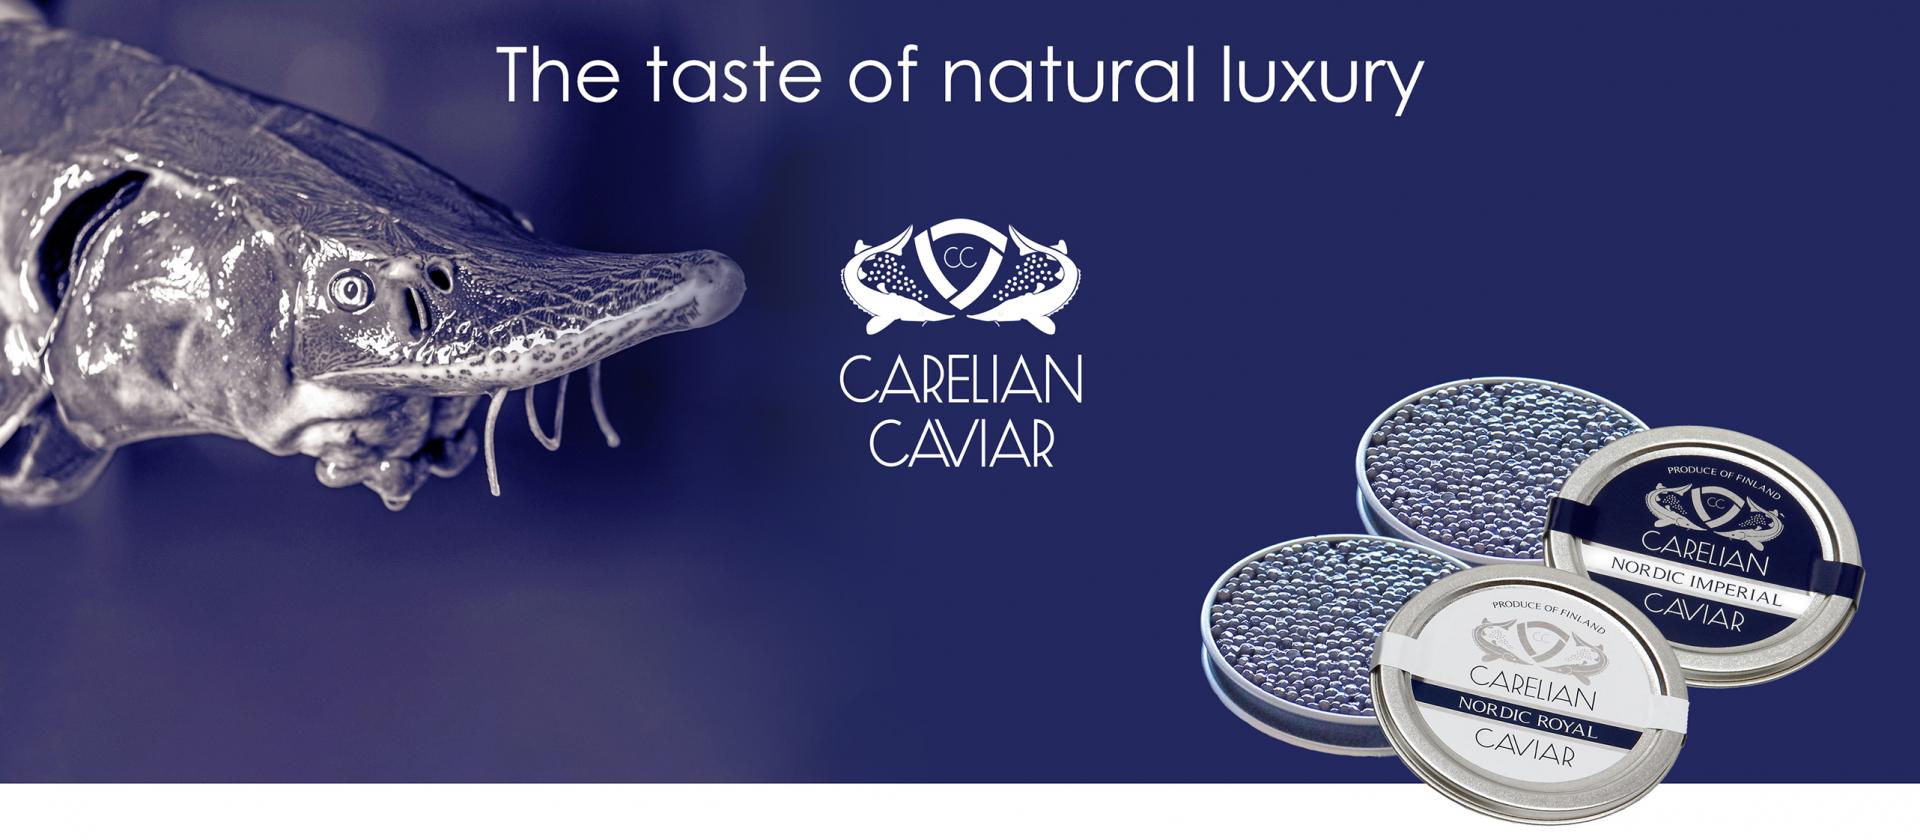 Carelian Caviar